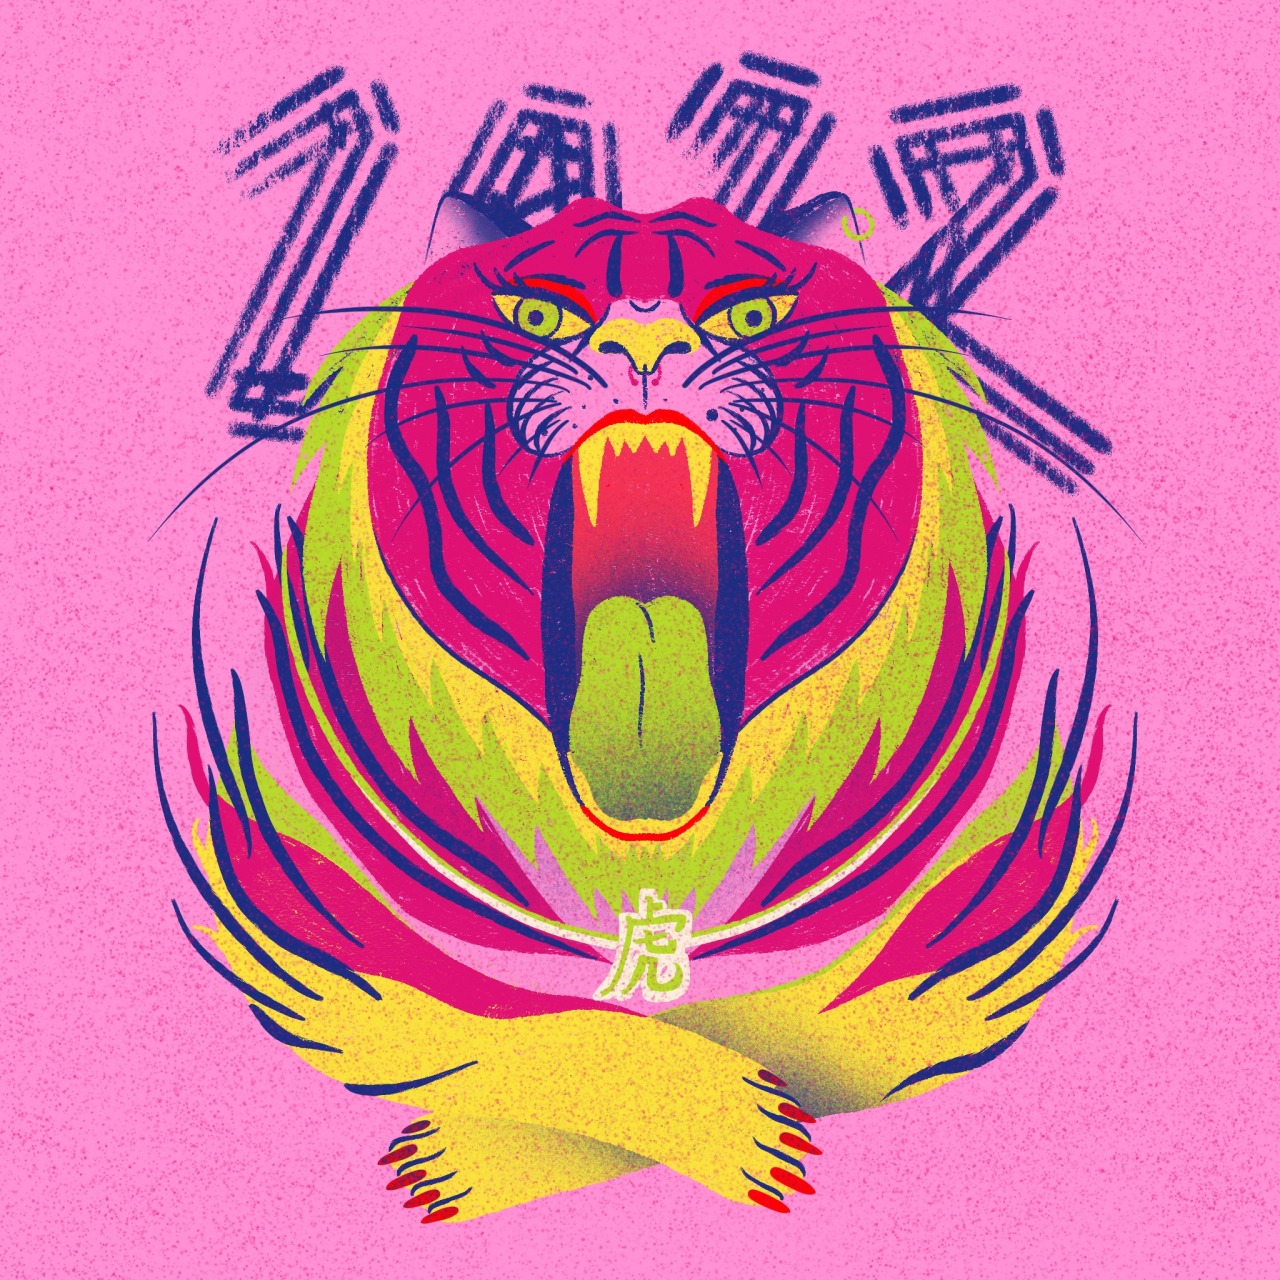 2022 | Happy Lunar New Year, happy Year of the Tiger 🐯💅🏼✨For more content: https://www.instagram.com/cristinapaleari_/ #chinesenewyear#2022#happynewyear#tiger#illustration#digital#cny2022#pink#nailpolish#roar#bigcats#lunarnewyear